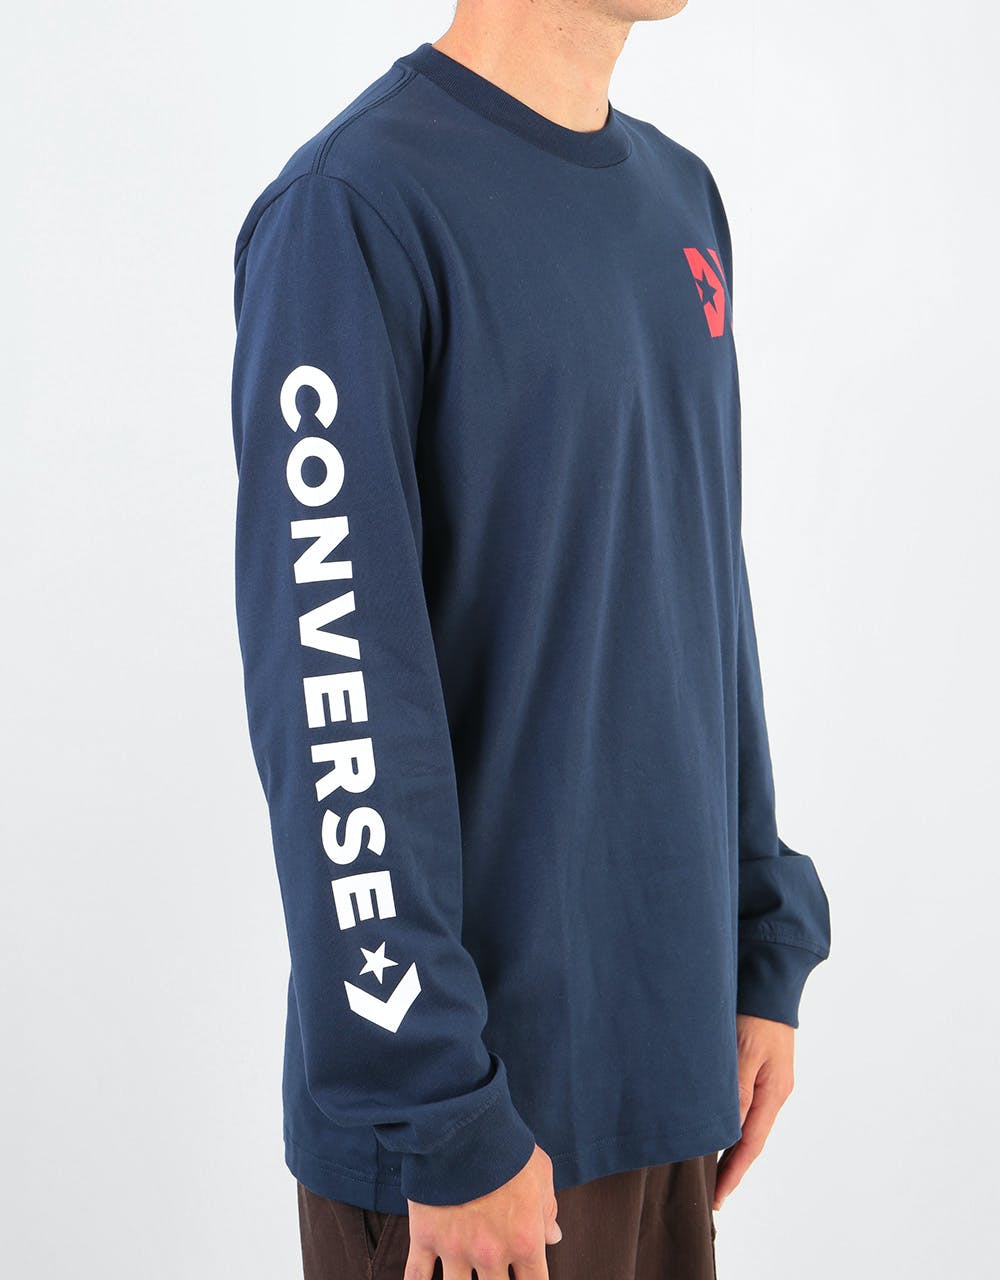 Converse Wordmark L/S T-Shirt - Obsidian